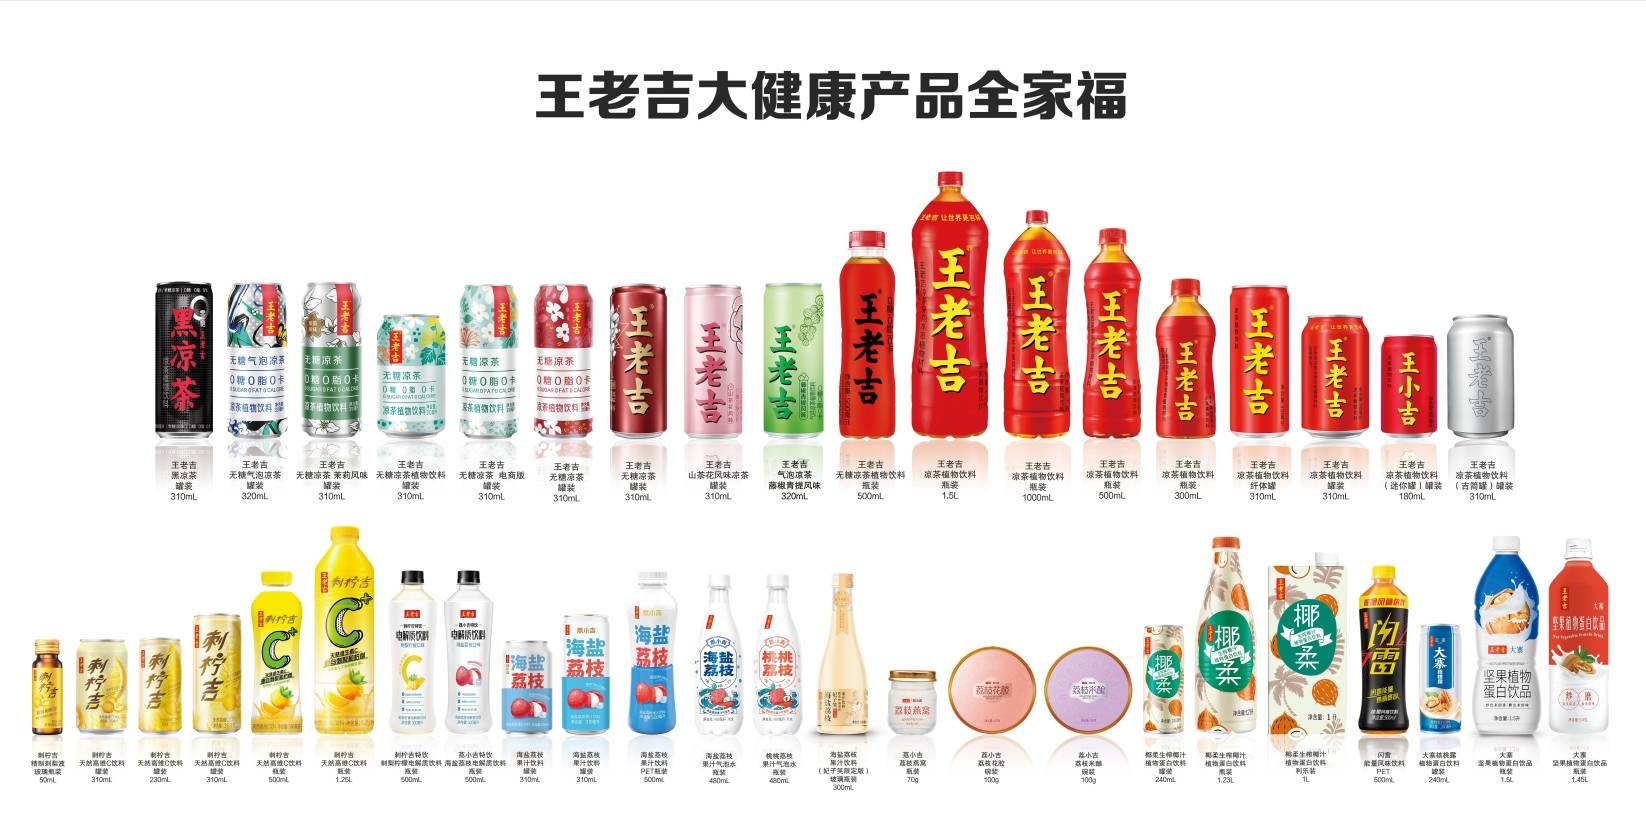 在单品多元化 品类多元化的产品战略下,除了这两款新品,王老吉还